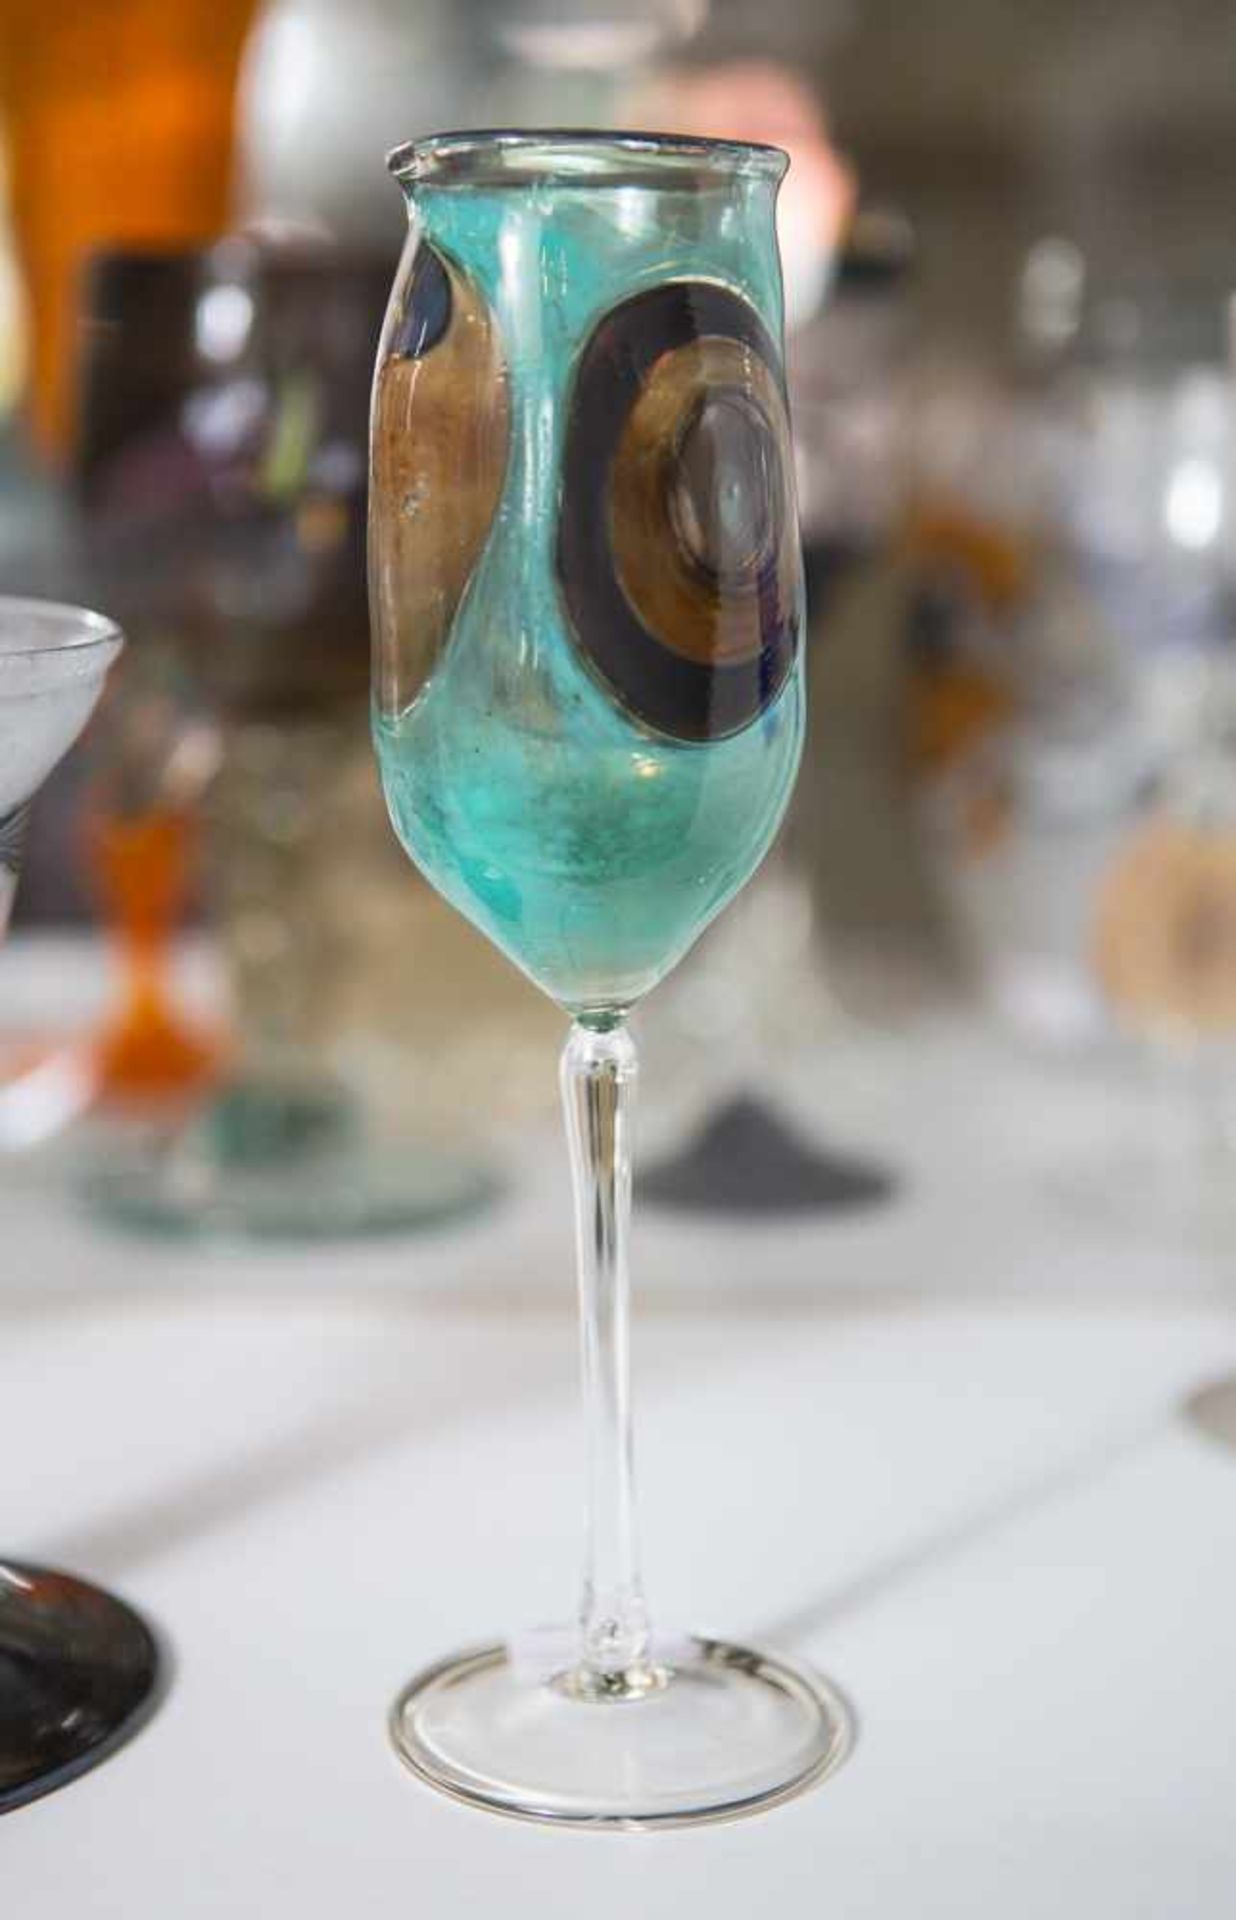 Stengelglas, Entwurf Stefan Scheuerer (geb. 1960), farbloses Glas, Kuppa polychrom gefärbtmit